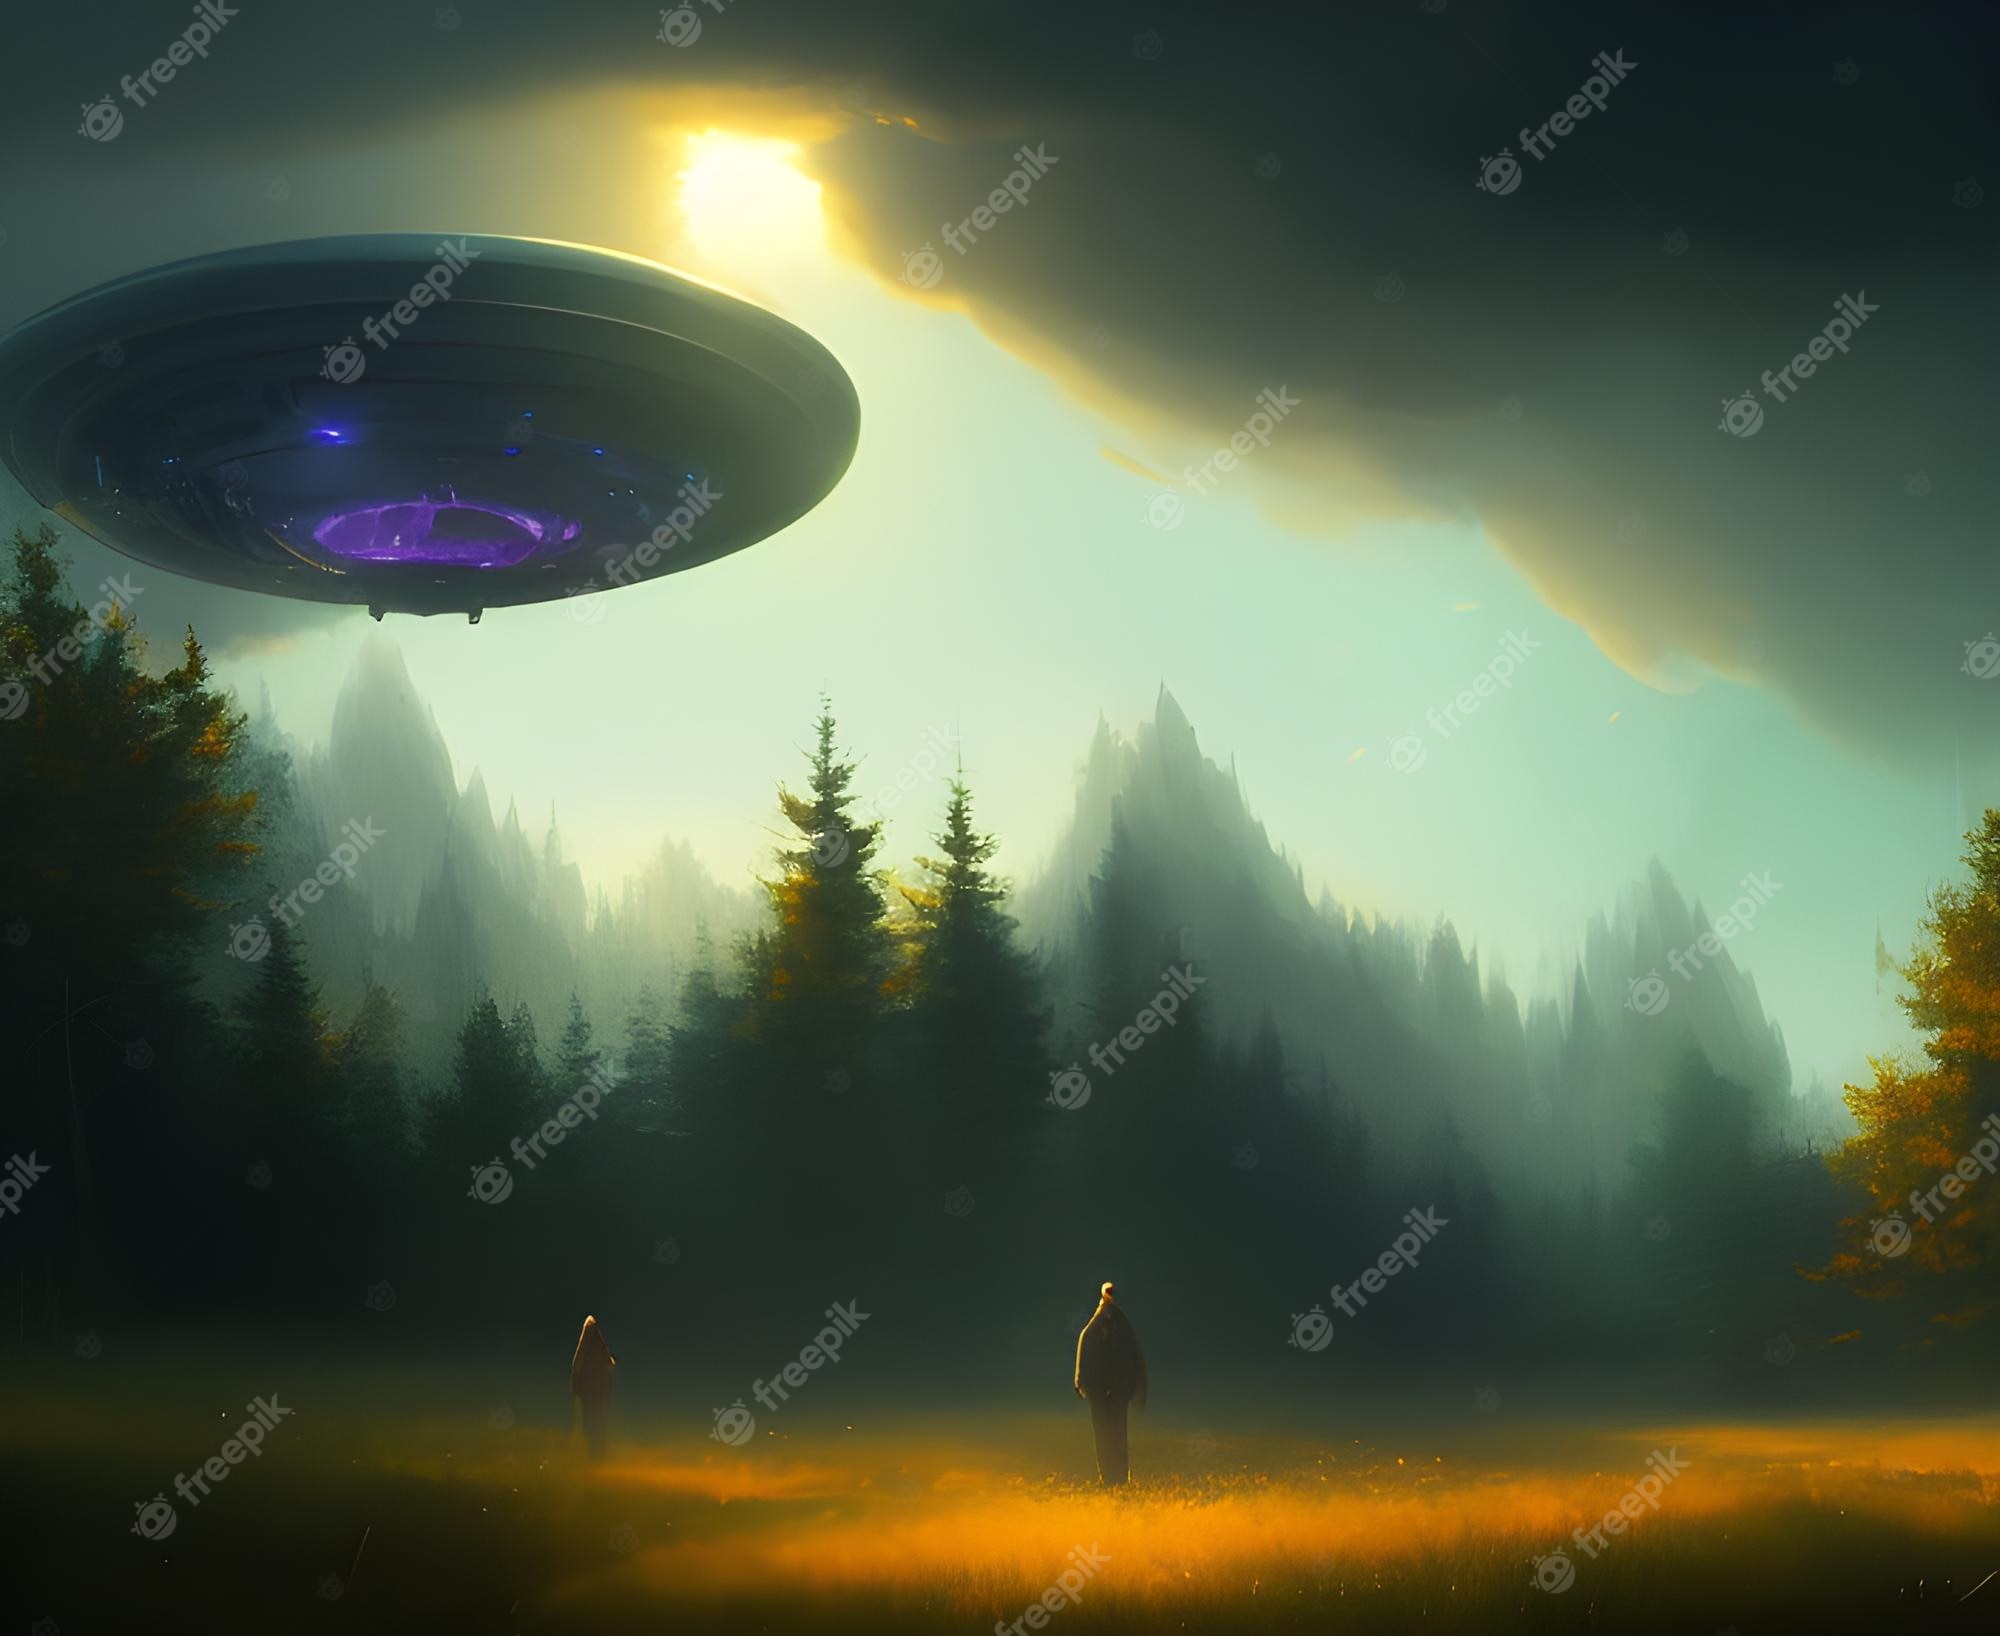 alien wallpaper